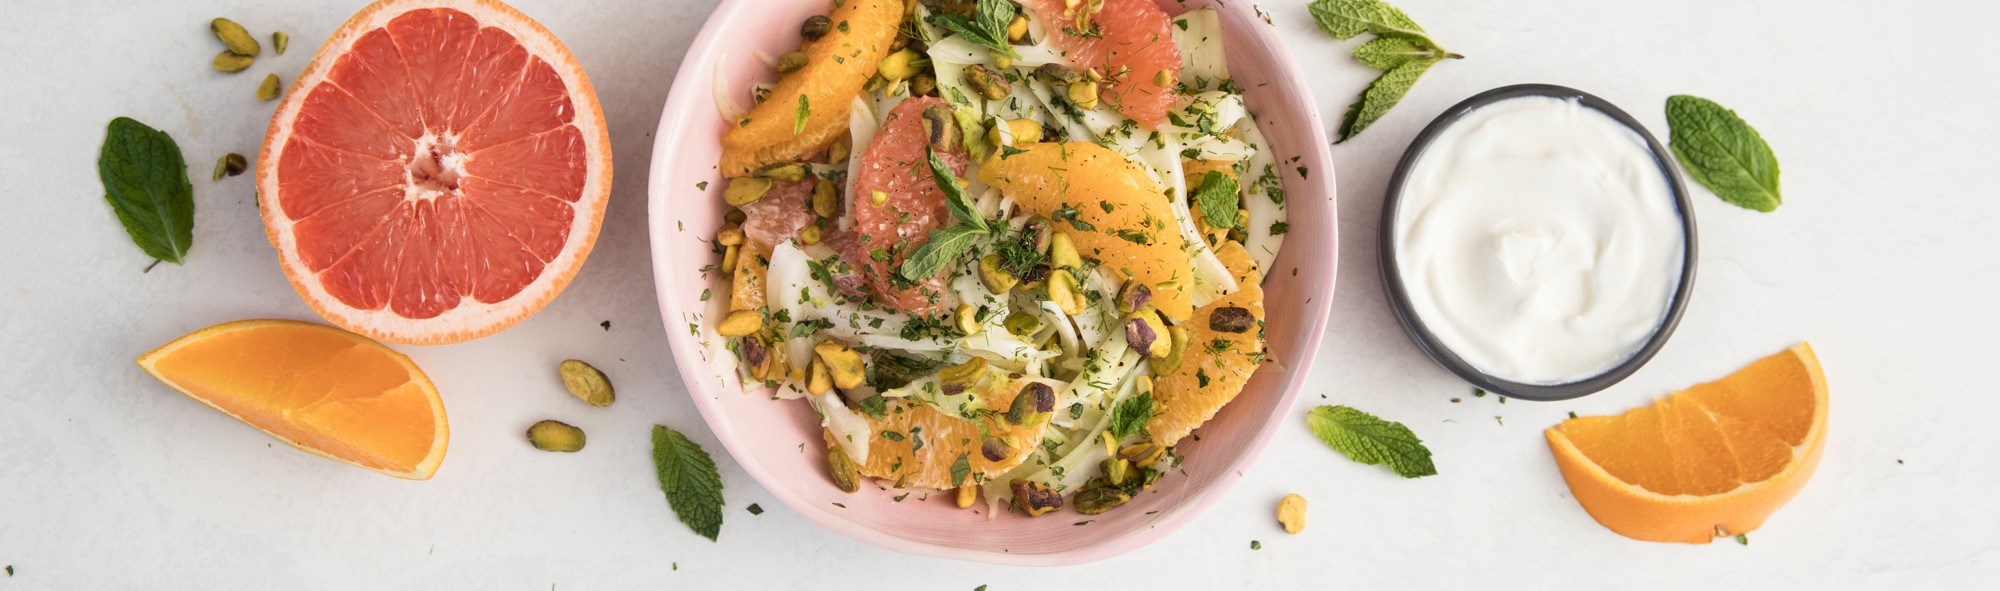 Salade au fenouil, agrumes et sauce au yaourt